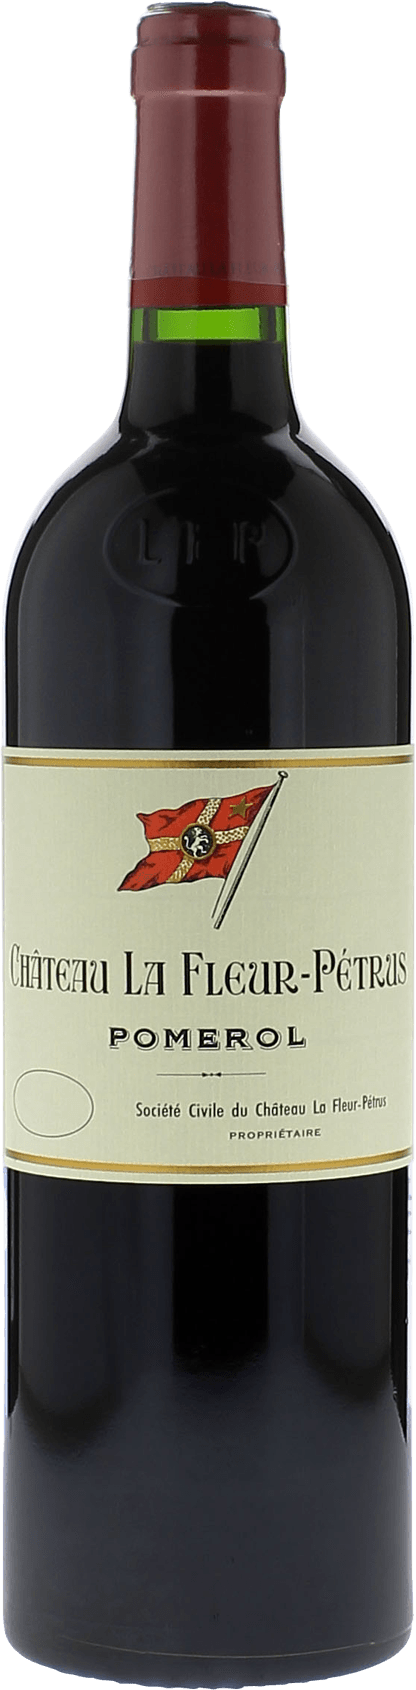 La fleur petrus 1986  Pomerol, Bordeaux rouge